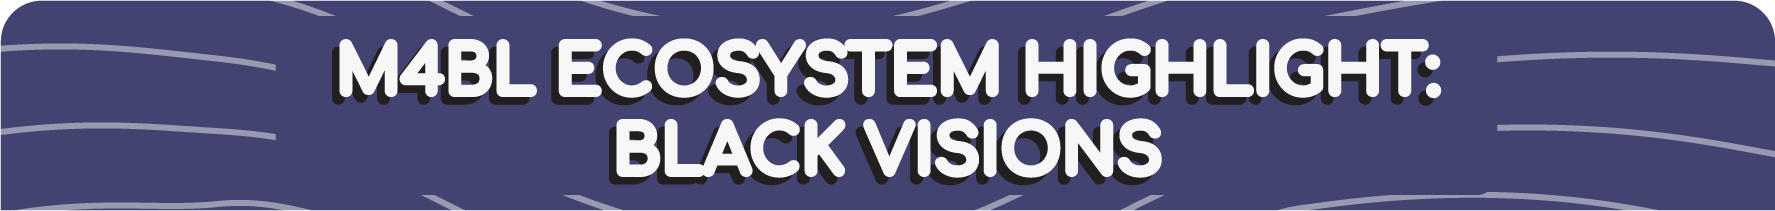 M4bl ecosystem highlight: Black visions